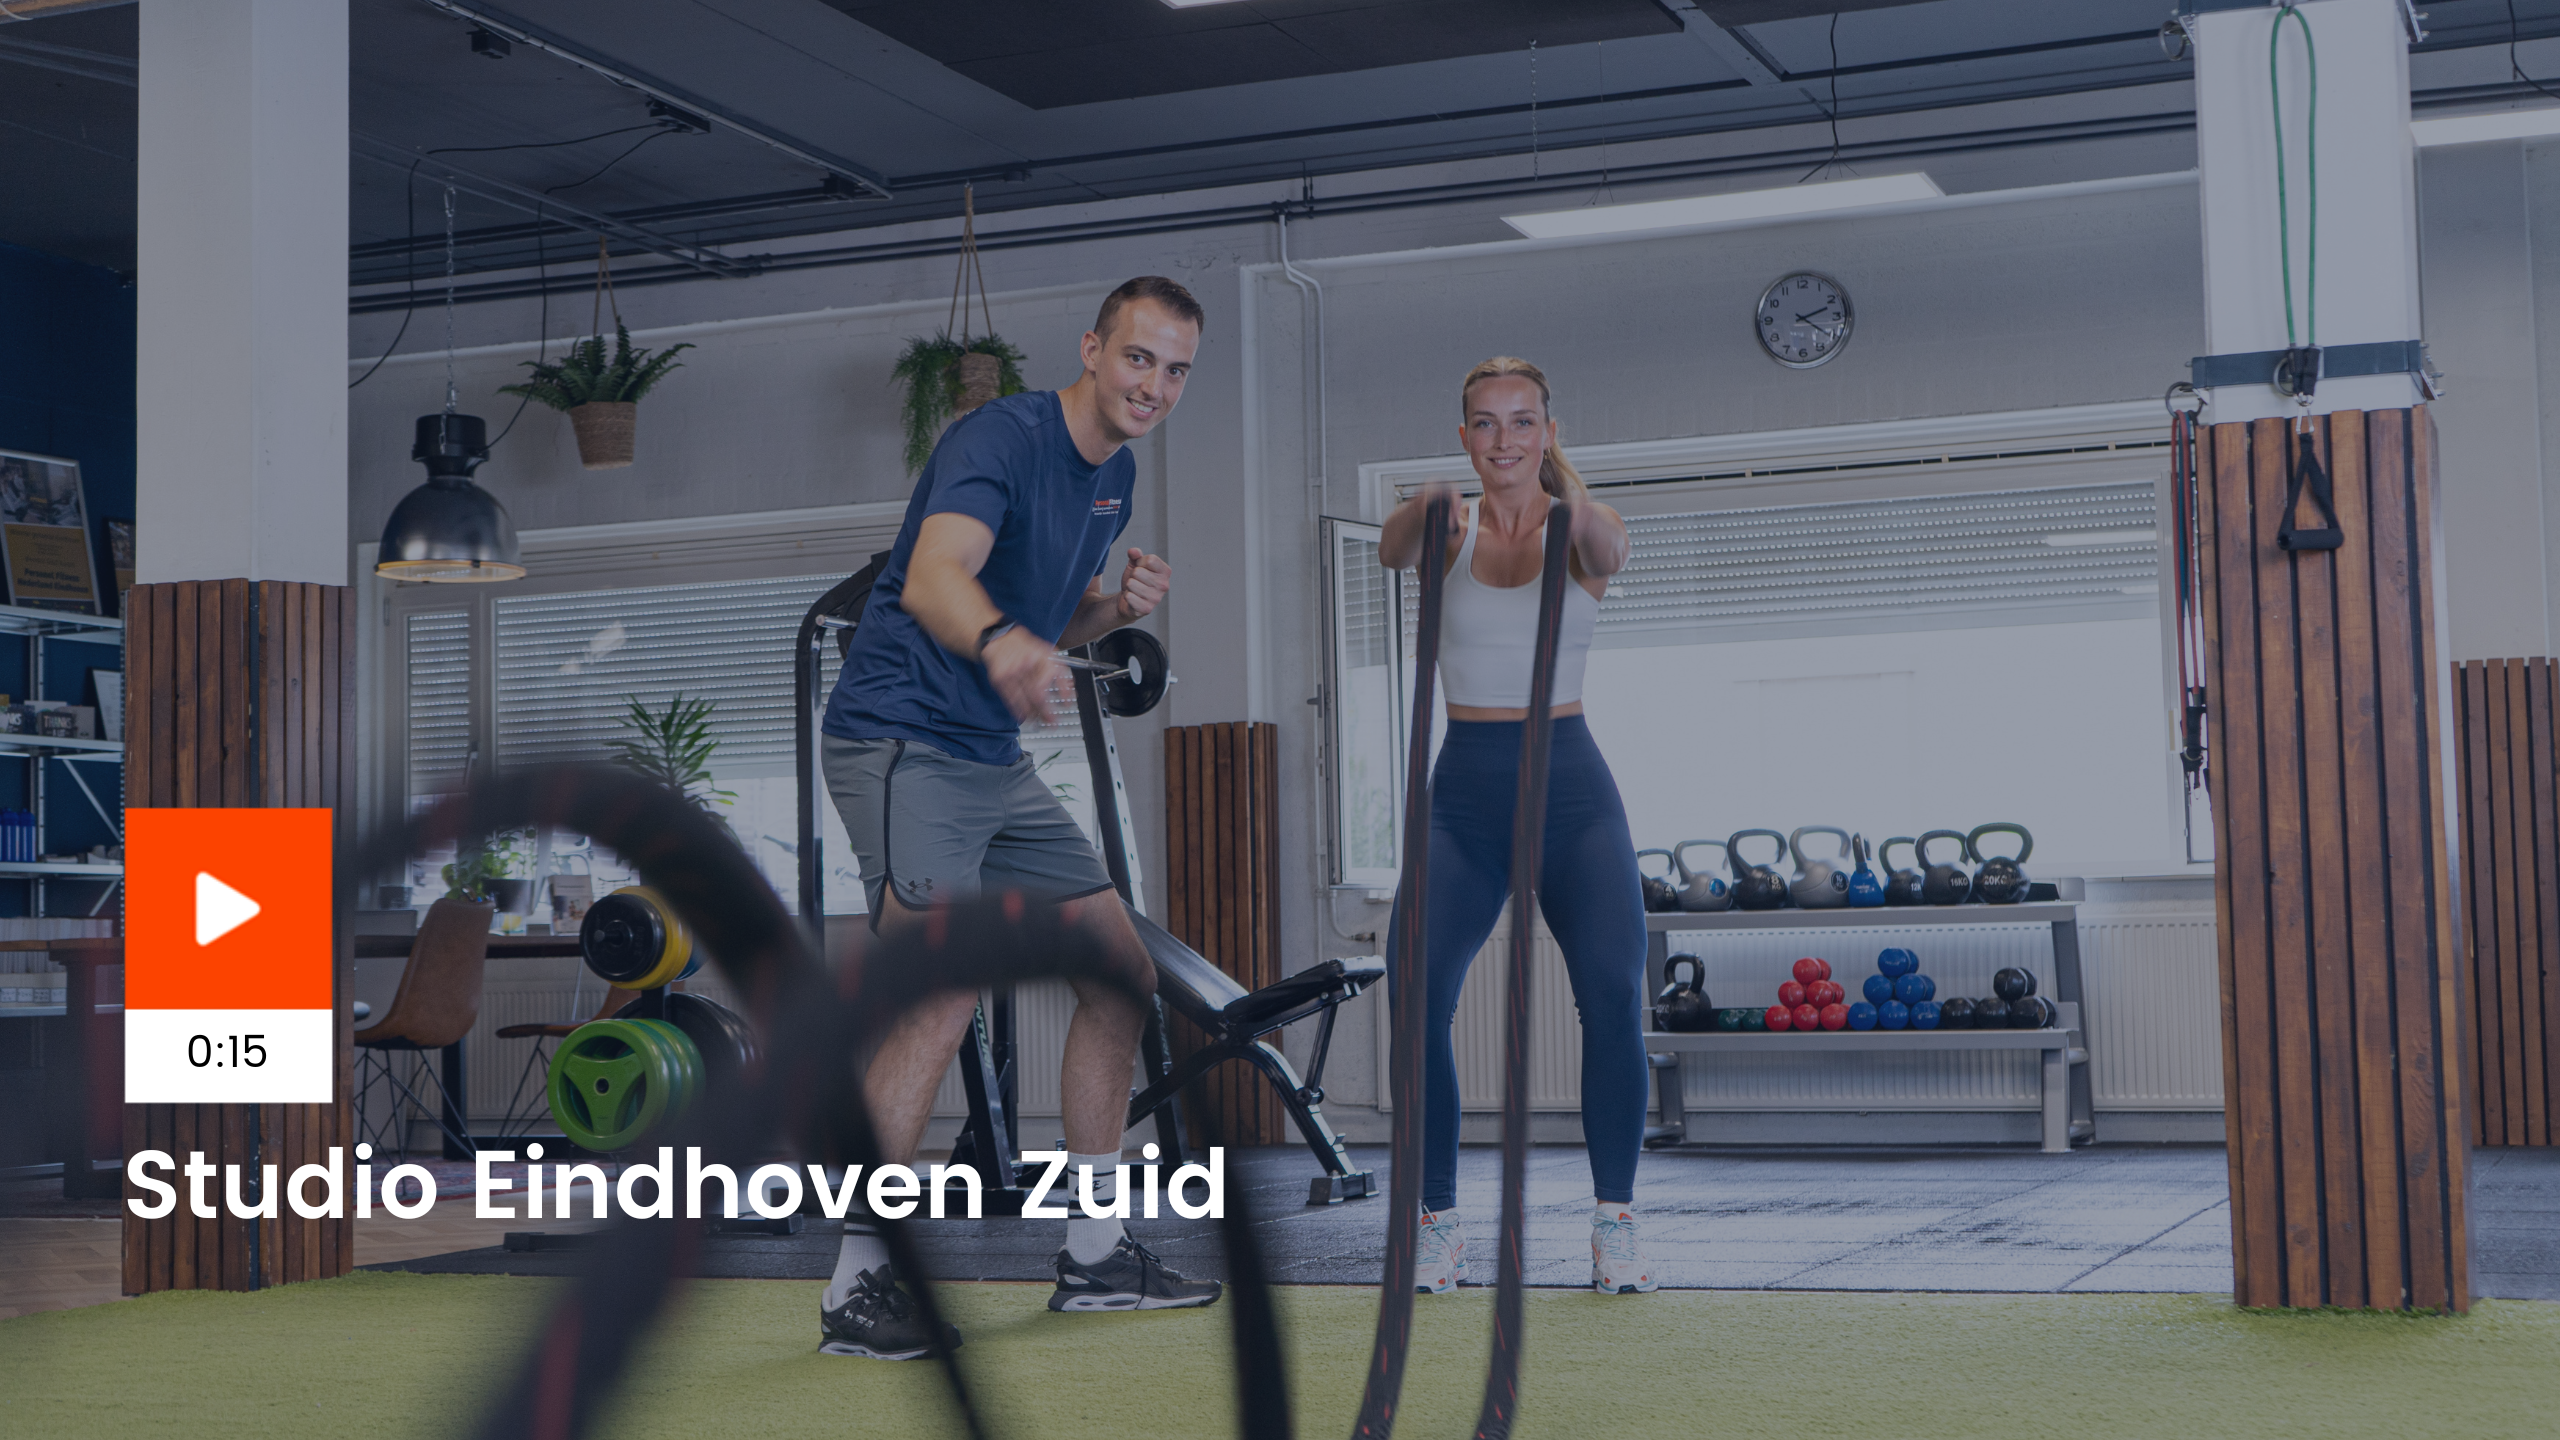 personal trainer Eindhoven Zuid